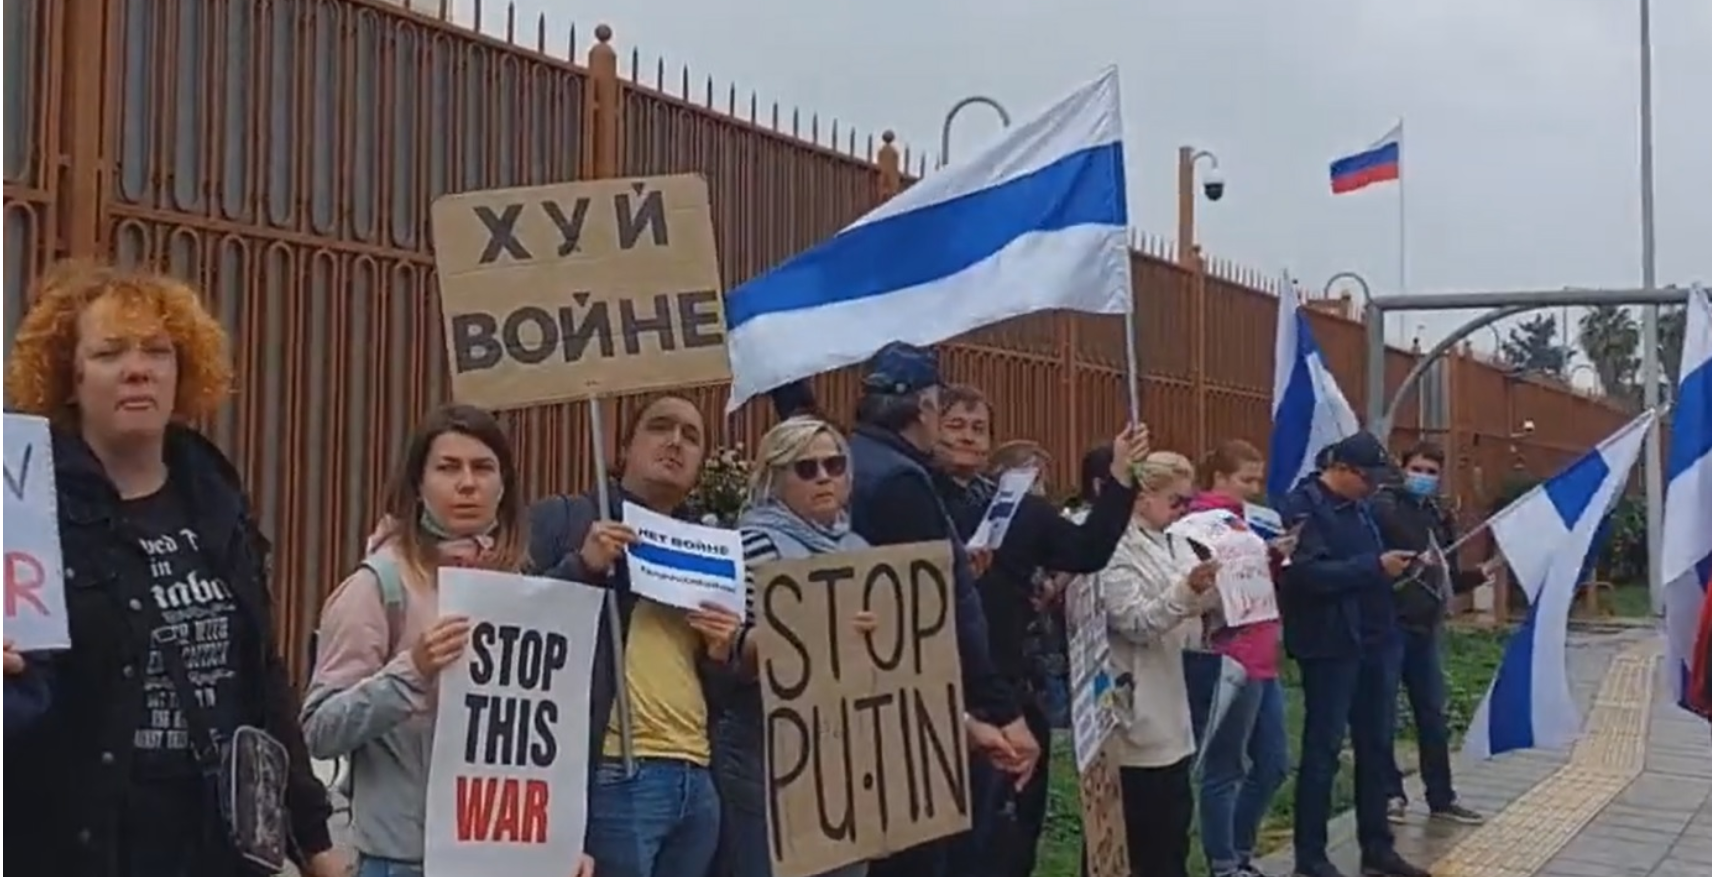 E kuqja ka vdekur! Opozita valëvit flamurin e ri bardhë e blu, kundër luftës, kundër Putin